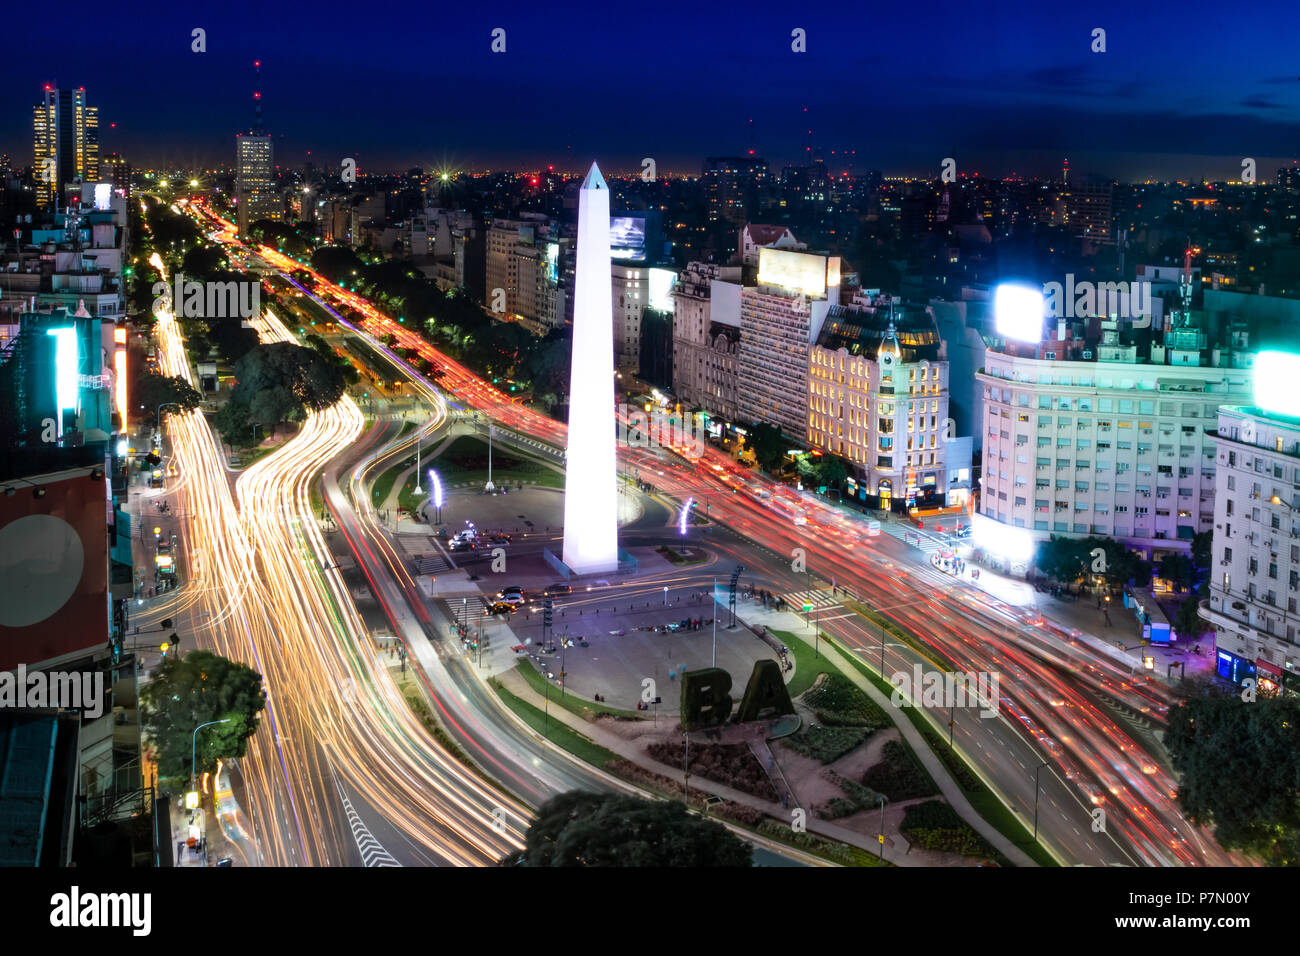 Vue aérienne de Buenos Aires et l'avenue 9 de julio, la nuit - Buenos Aires, Argentine Banque D'Images